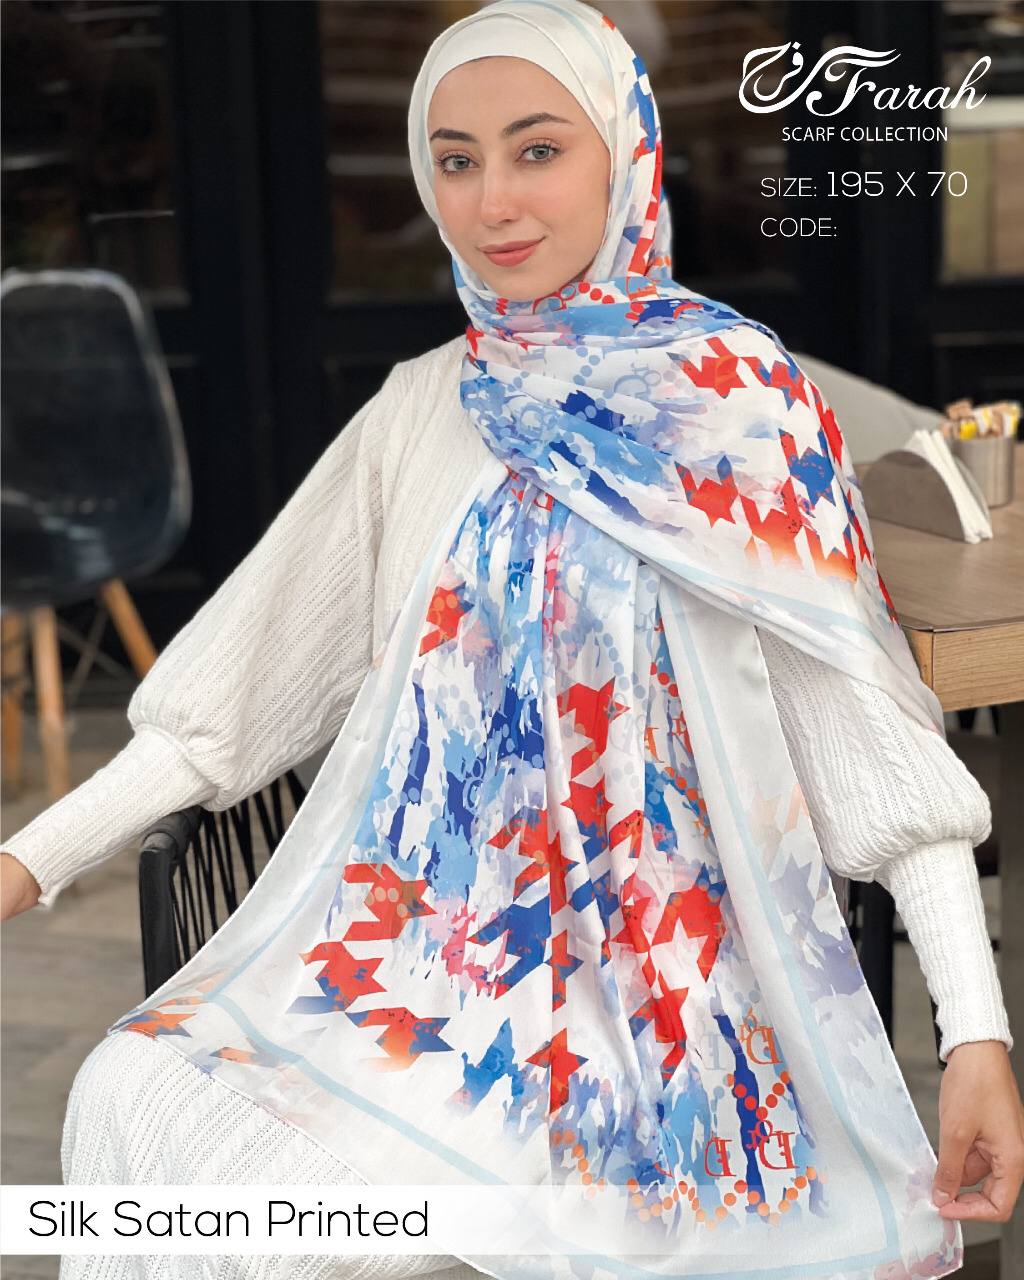 طرحة حجاب ساتان حربر مطبوعة 195 * 70 سم إيشارب مجموعة رائعة من التصميمات - Style-7